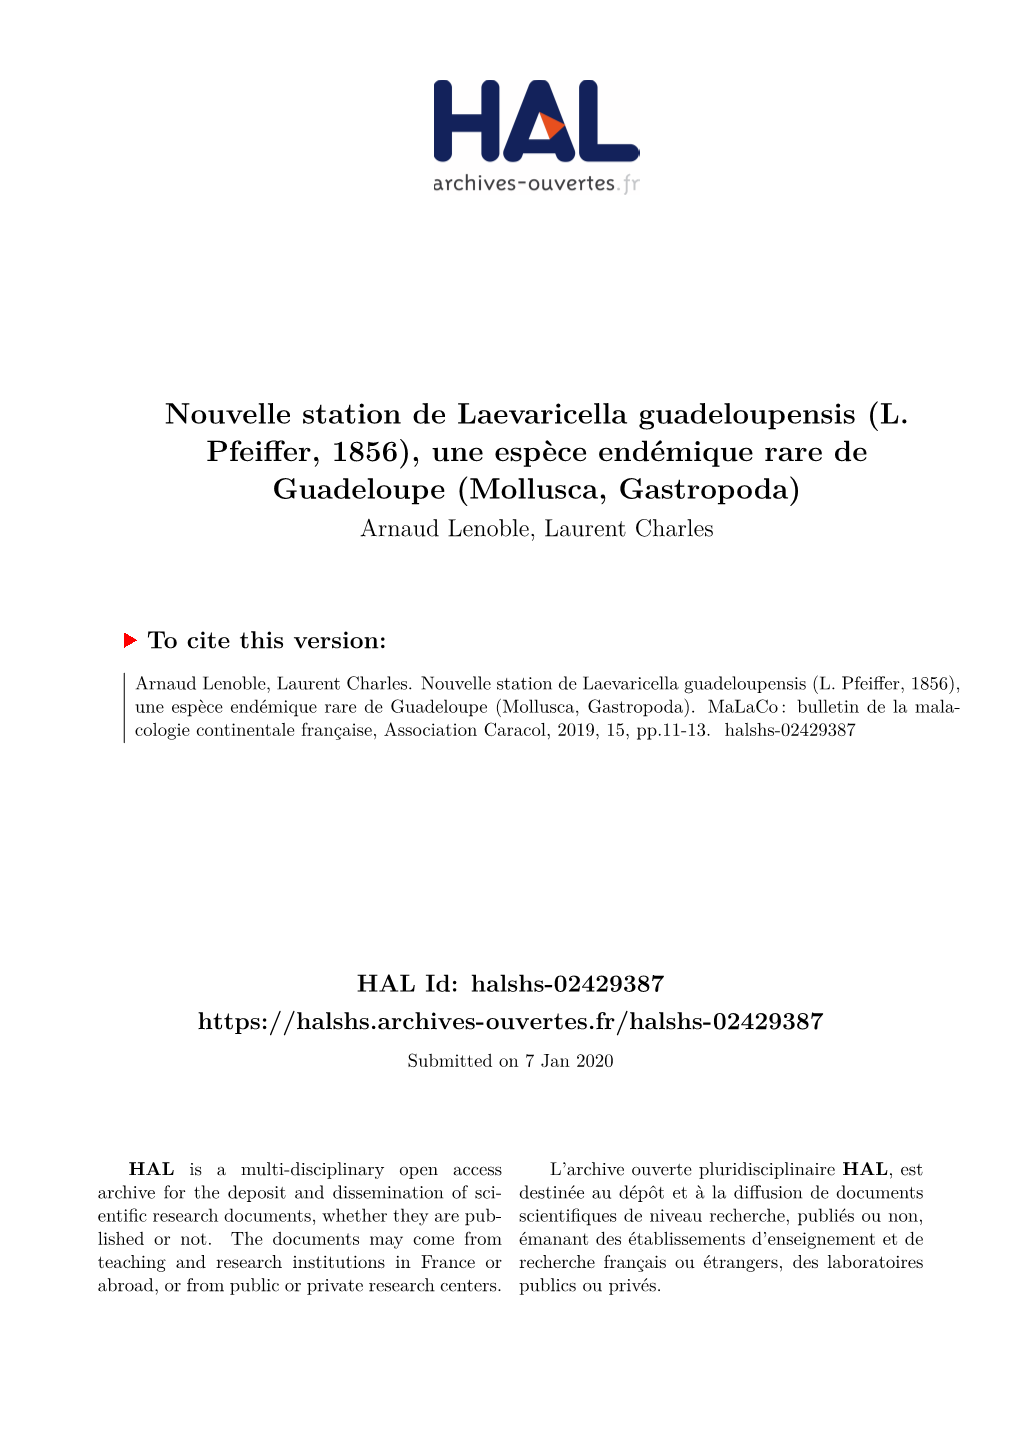 Nouvelle Station De Laevaricella Guadeloupensis (L. Pfeiffer, 1856), Une Espèce Endémique Rare De Guadeloupe (Mollusca, Gastropoda) Arnaud Lenoble, Laurent Charles